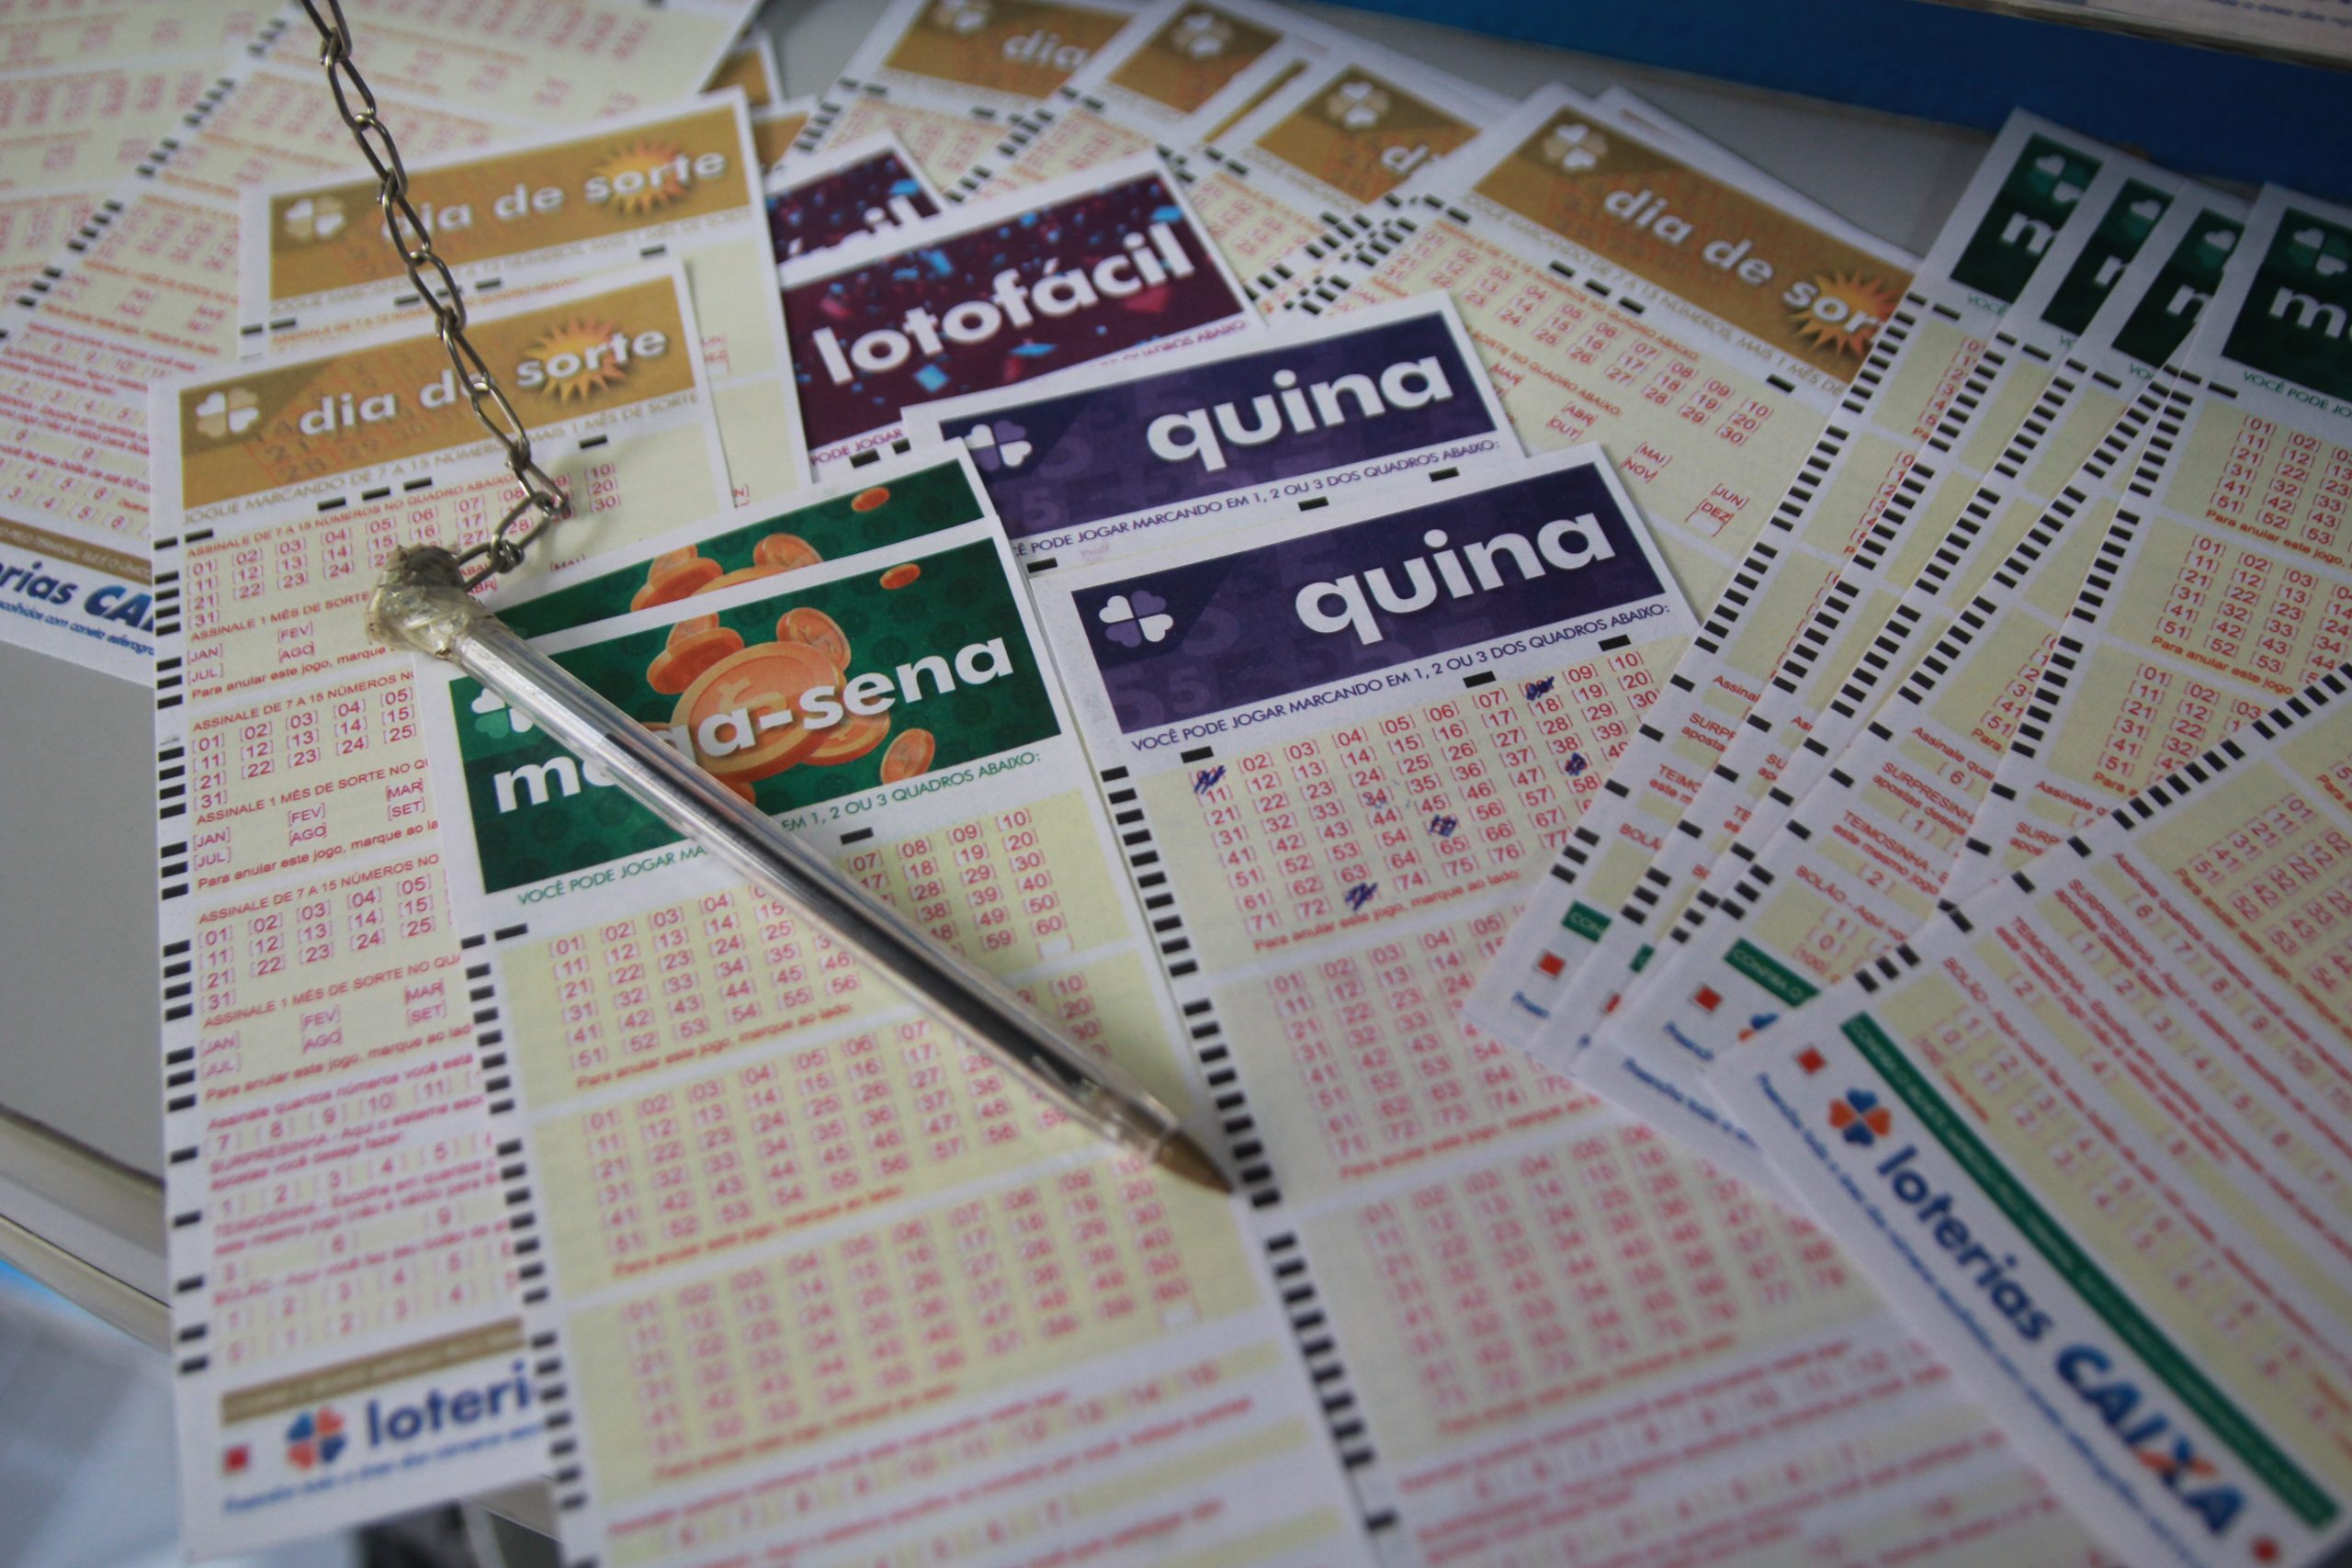 Loterias: confira o resultado da Mega-Sena 2410, Lotofácil 2326 e demais loterias de hoje (18/9)